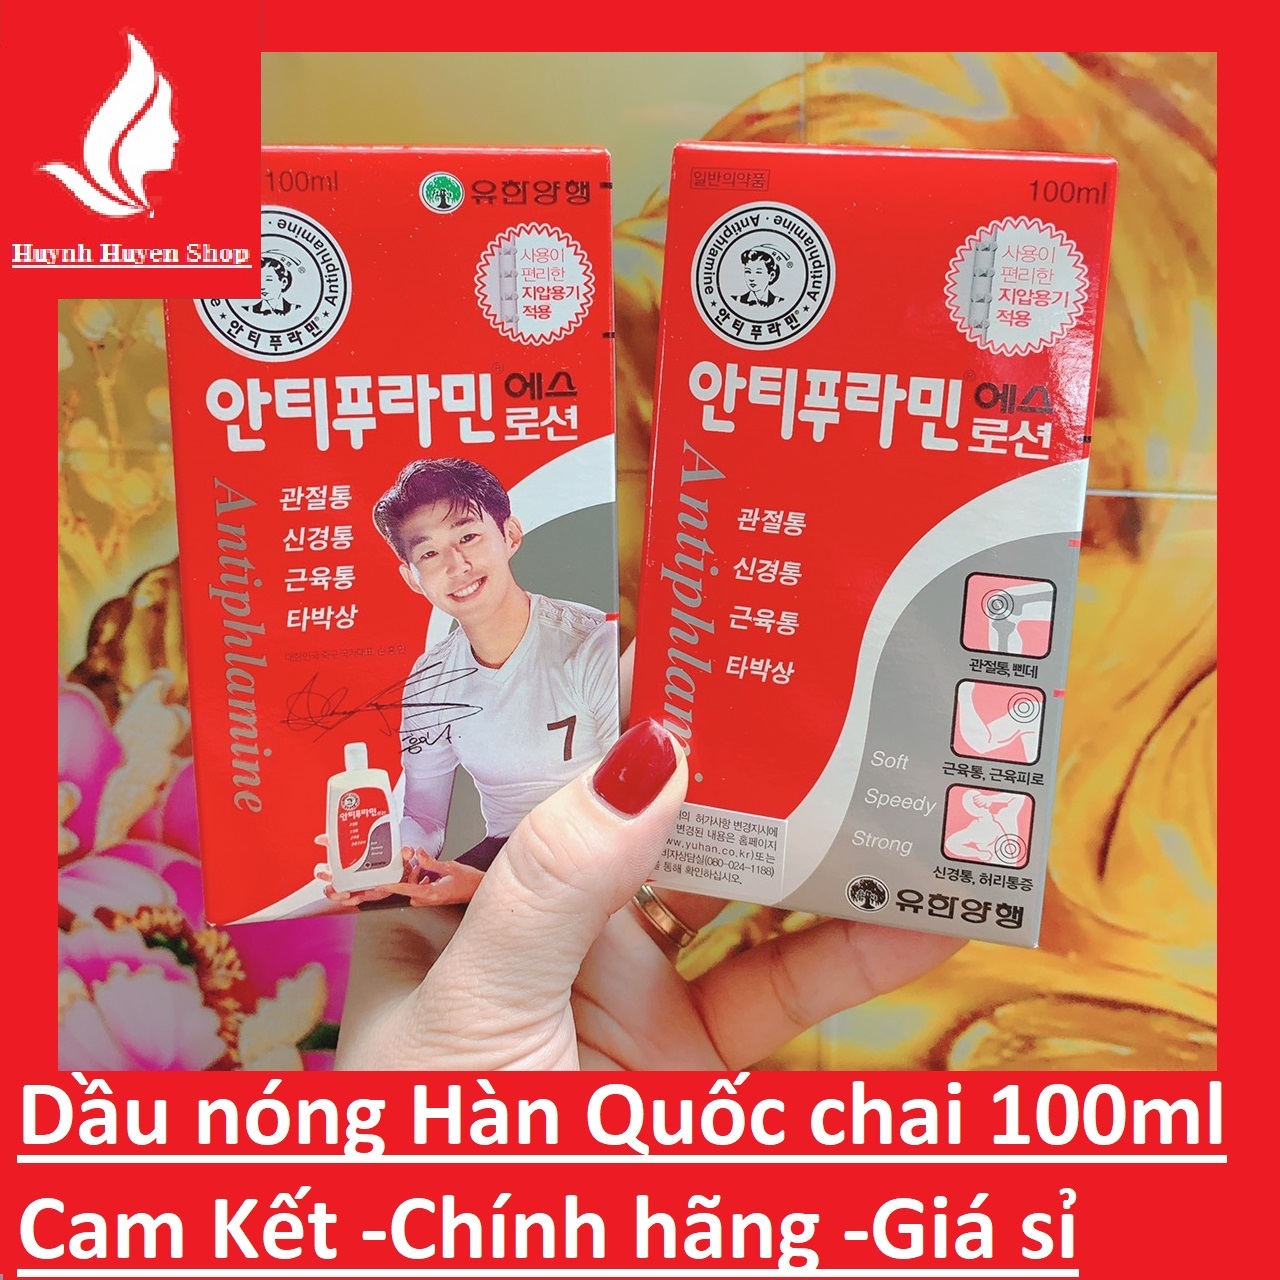 chính hãng -giá sỉ Dầu nóng xoa bóp antiphlamine Hàn Quốc 2 mẫu chai 100ml